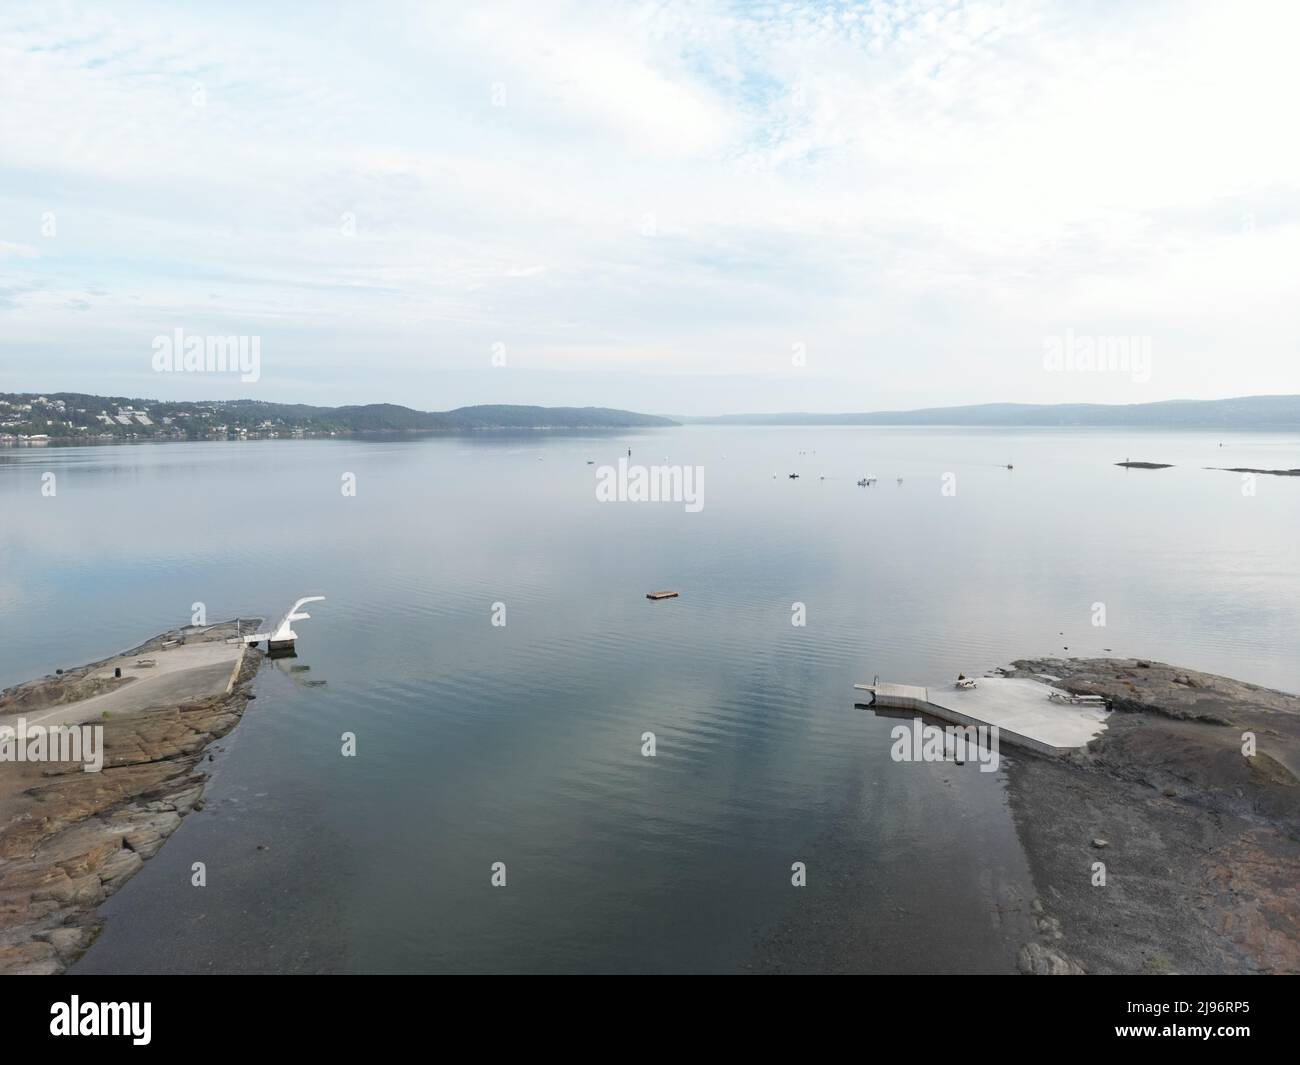 belle photo aérienne d'un paysage comprenant une tour de plongée et une plage, l'eau a un peu de réflexion et vous voyez le fjord en arrière-plan. Banque D'Images